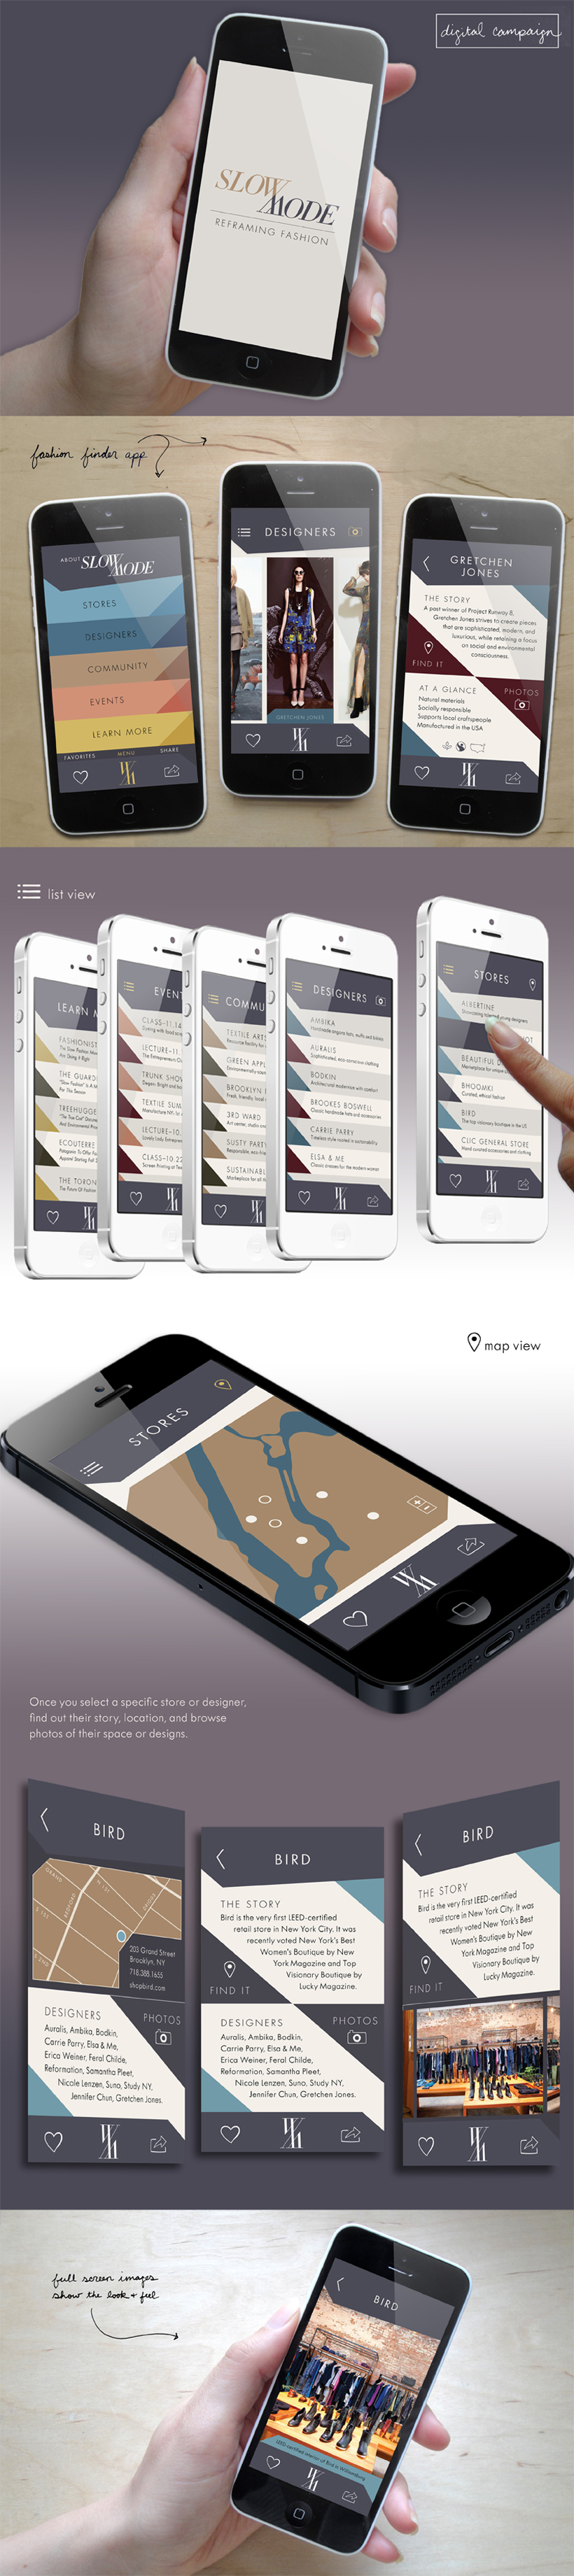 design app design interactive design